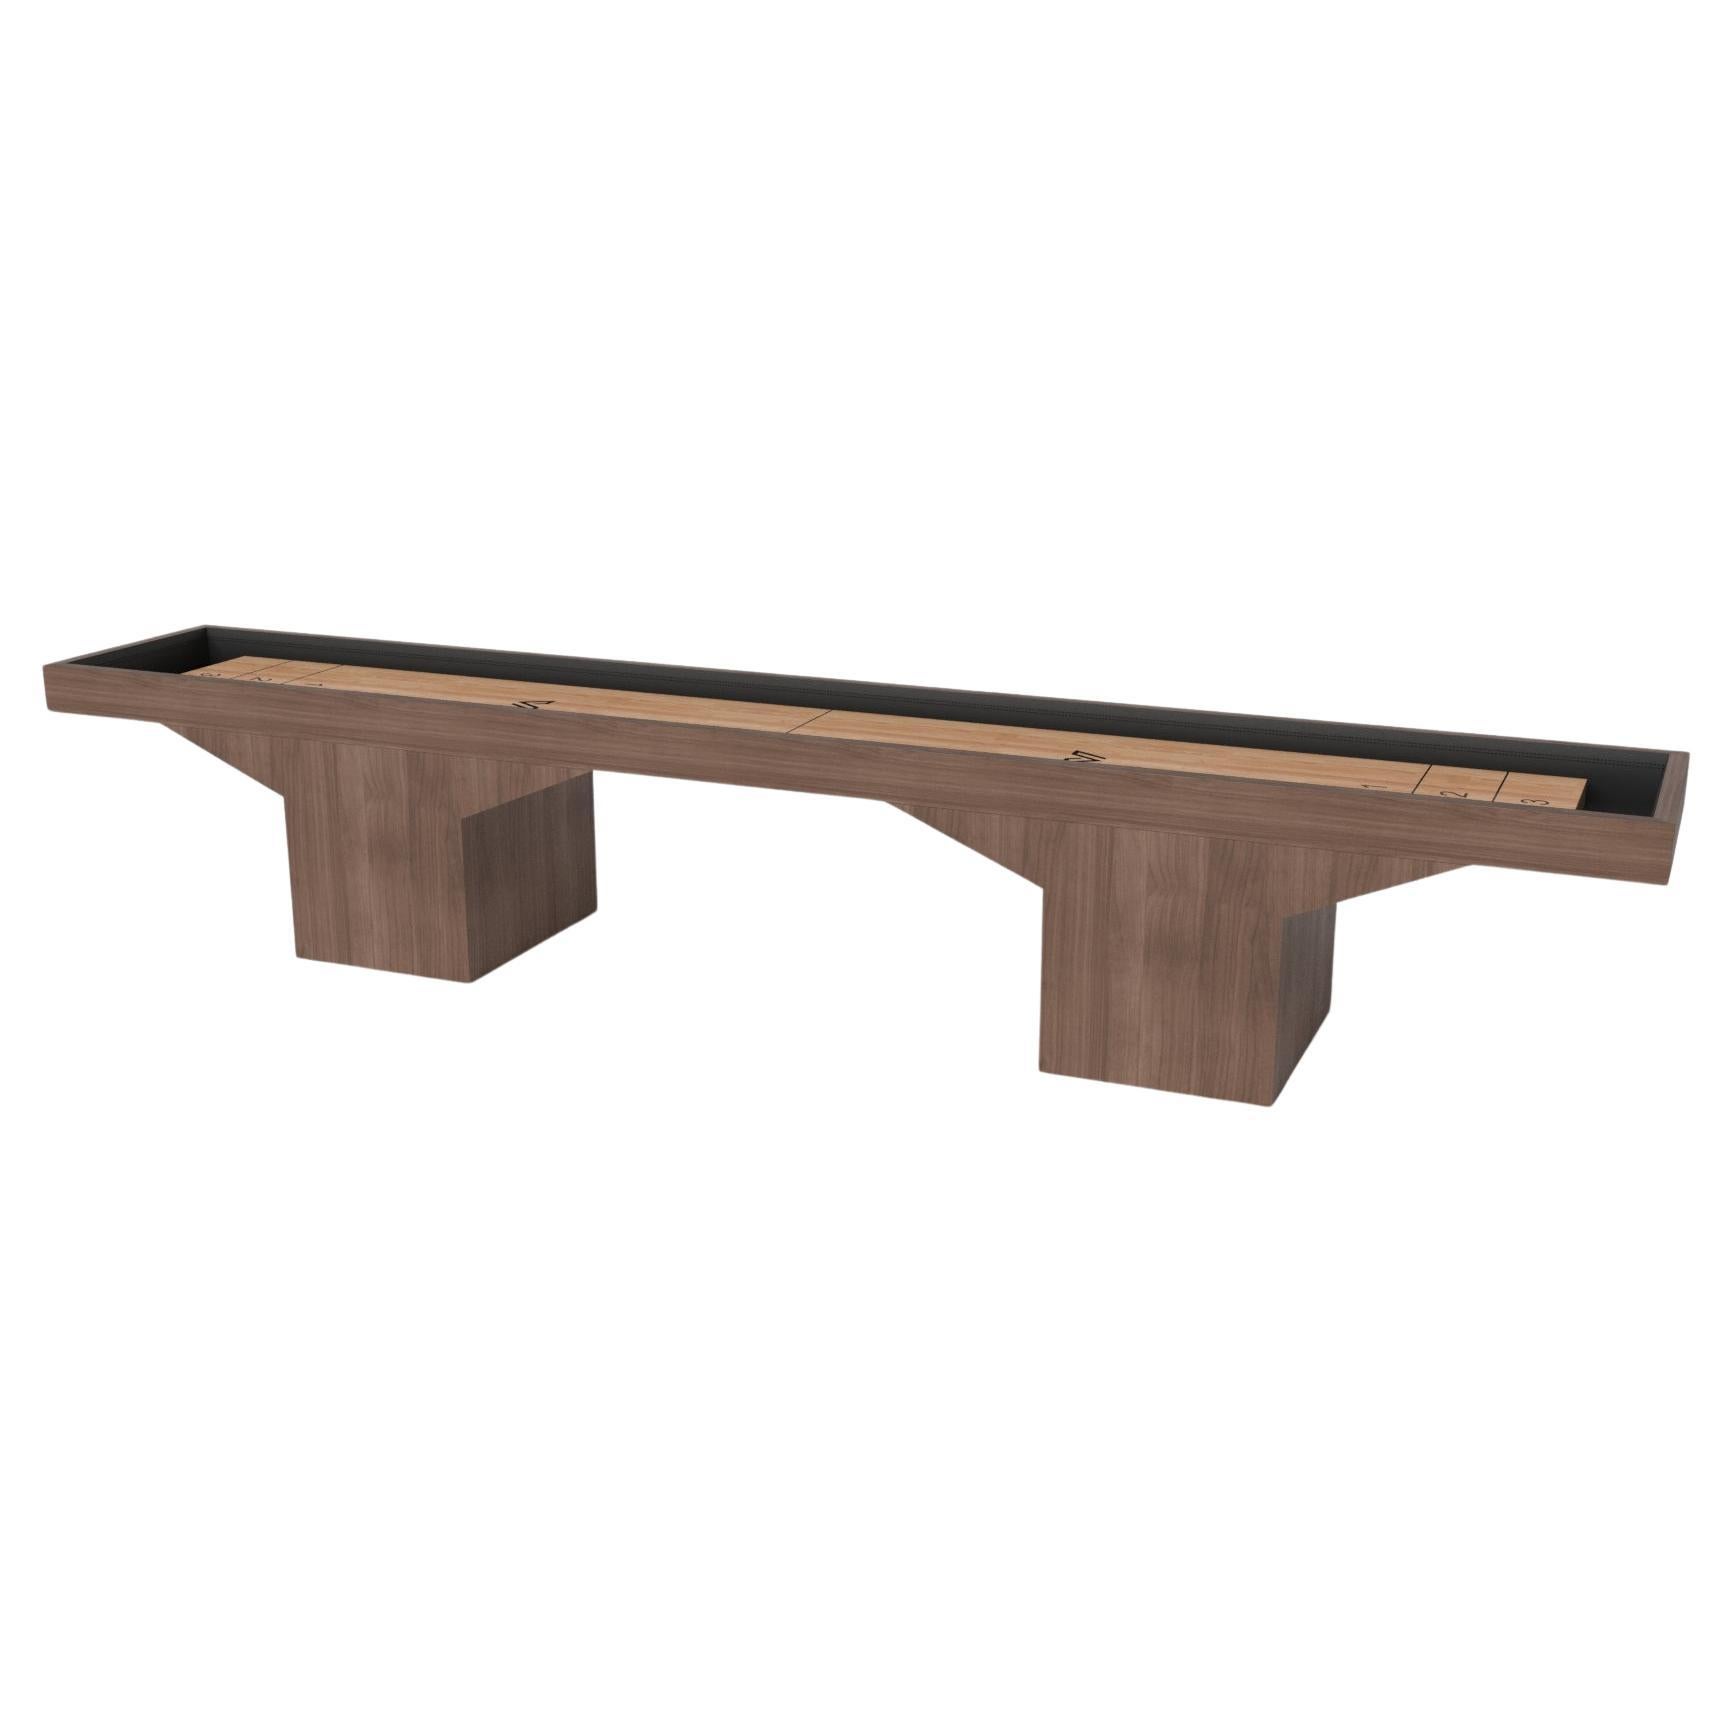 Tables de shuffleboard à tréteaux Elevate Customs / Solid Walnut Wood en 18' - USA